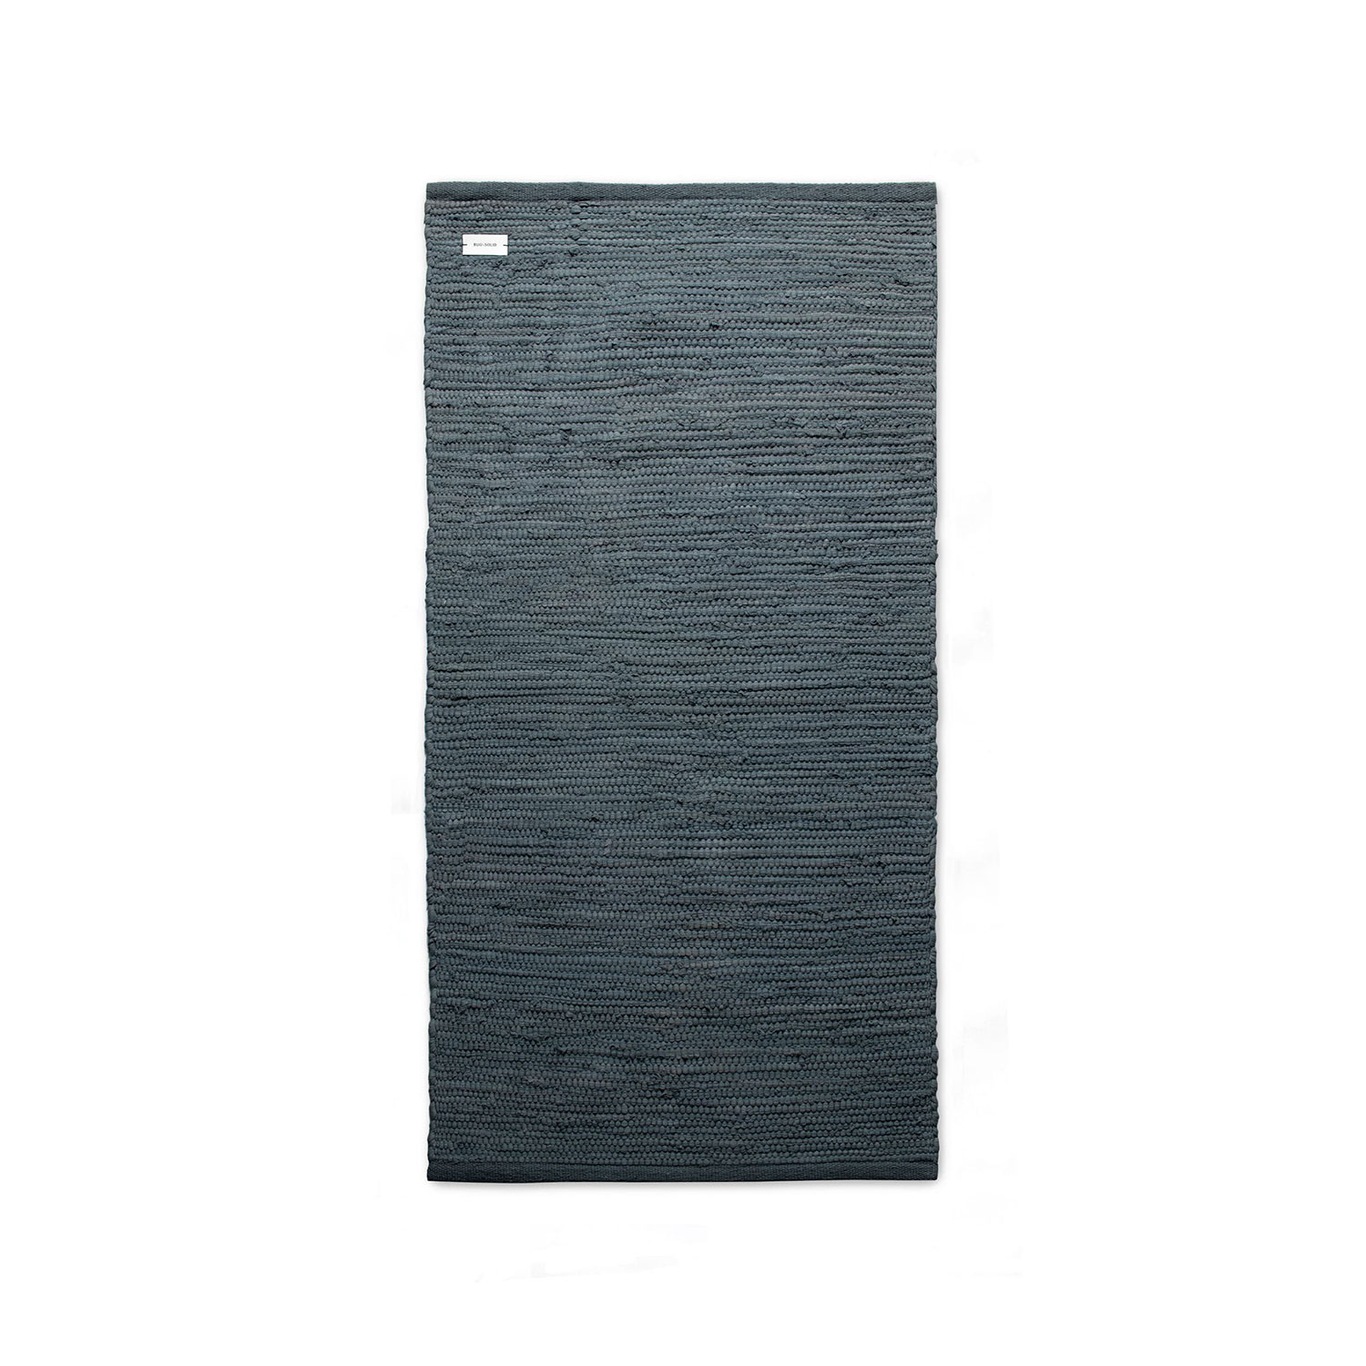 Cotton Matto Steel Grey, 140x200 cm